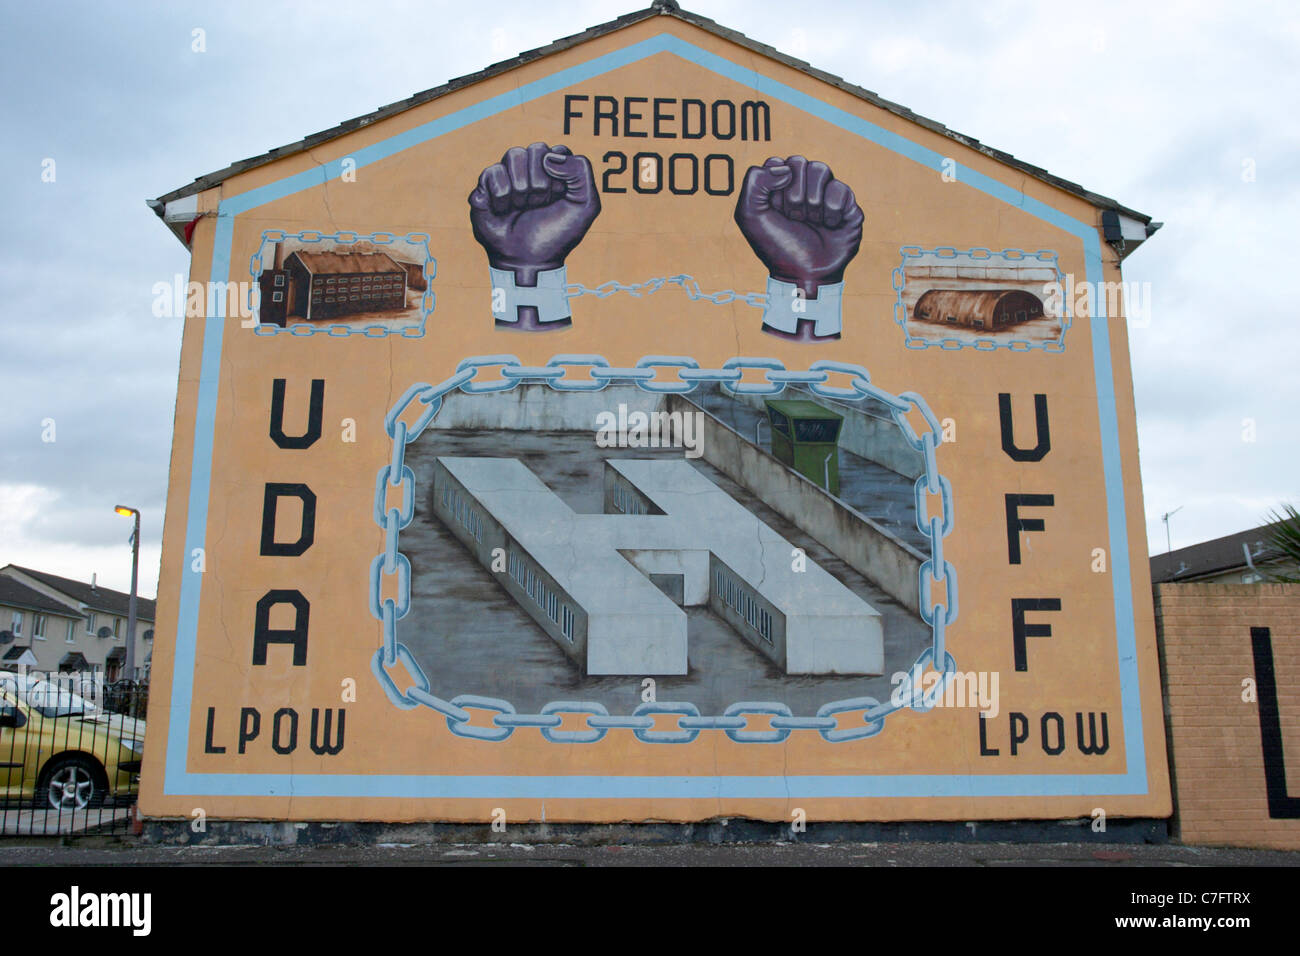 Uda e uff lealisti blocco h prigionieri parete lpow pittura murale di west belfast Irlanda del Nord Foto Stock